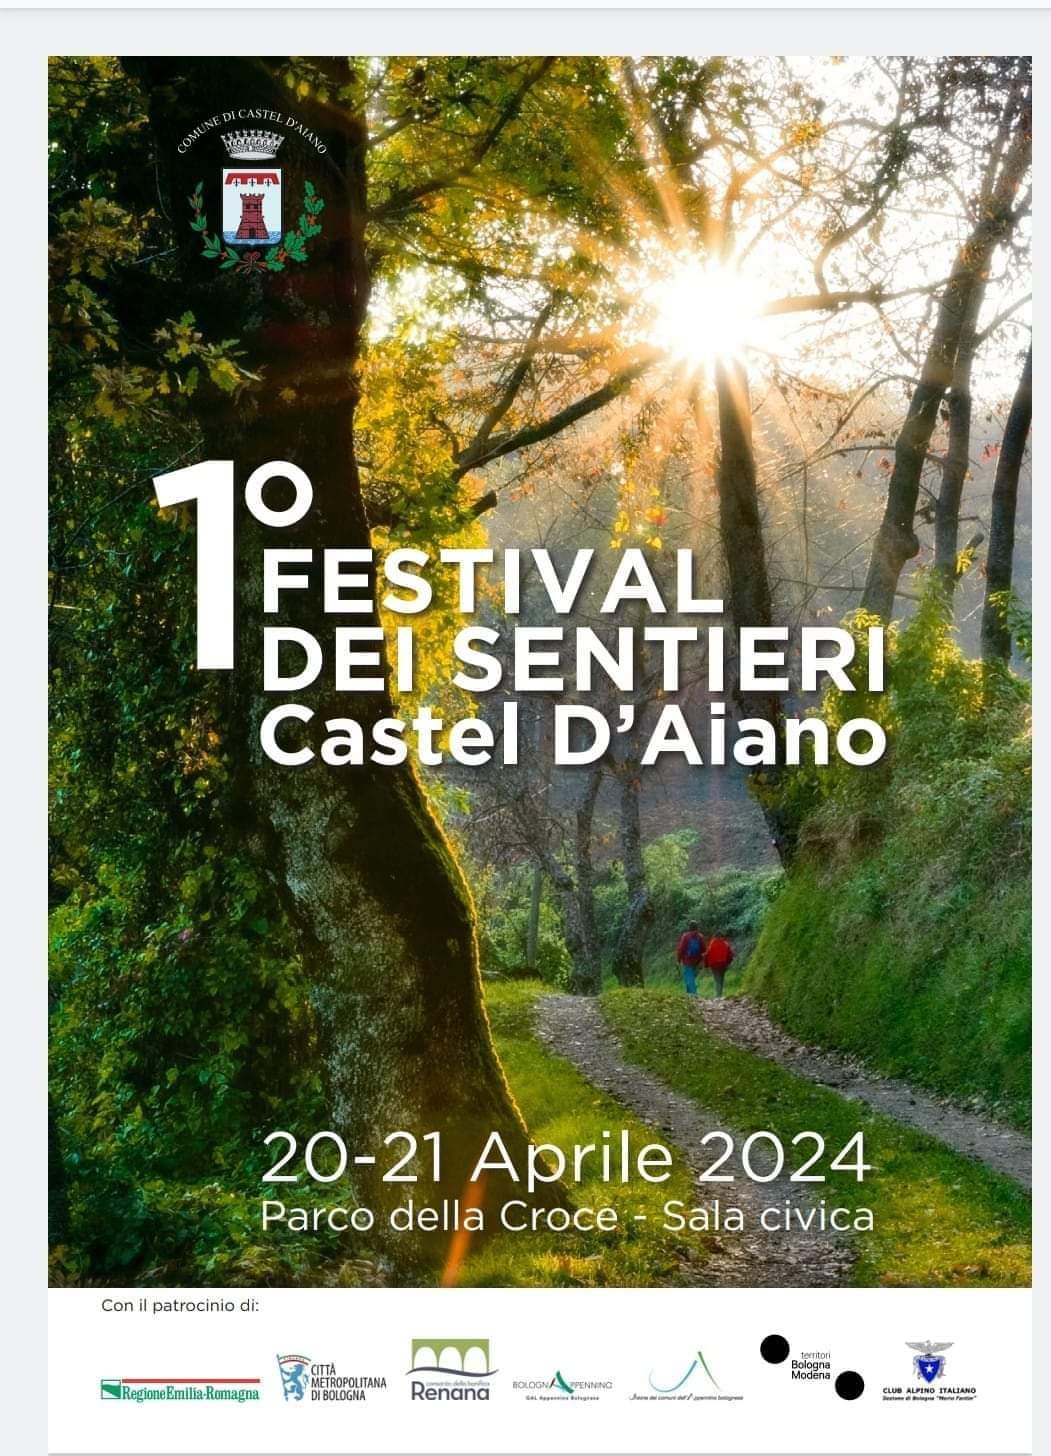 1° FESTIVAL DEI SENTIERI - Castel d'Aiano (Bo) - 20/21 Aprile 2024